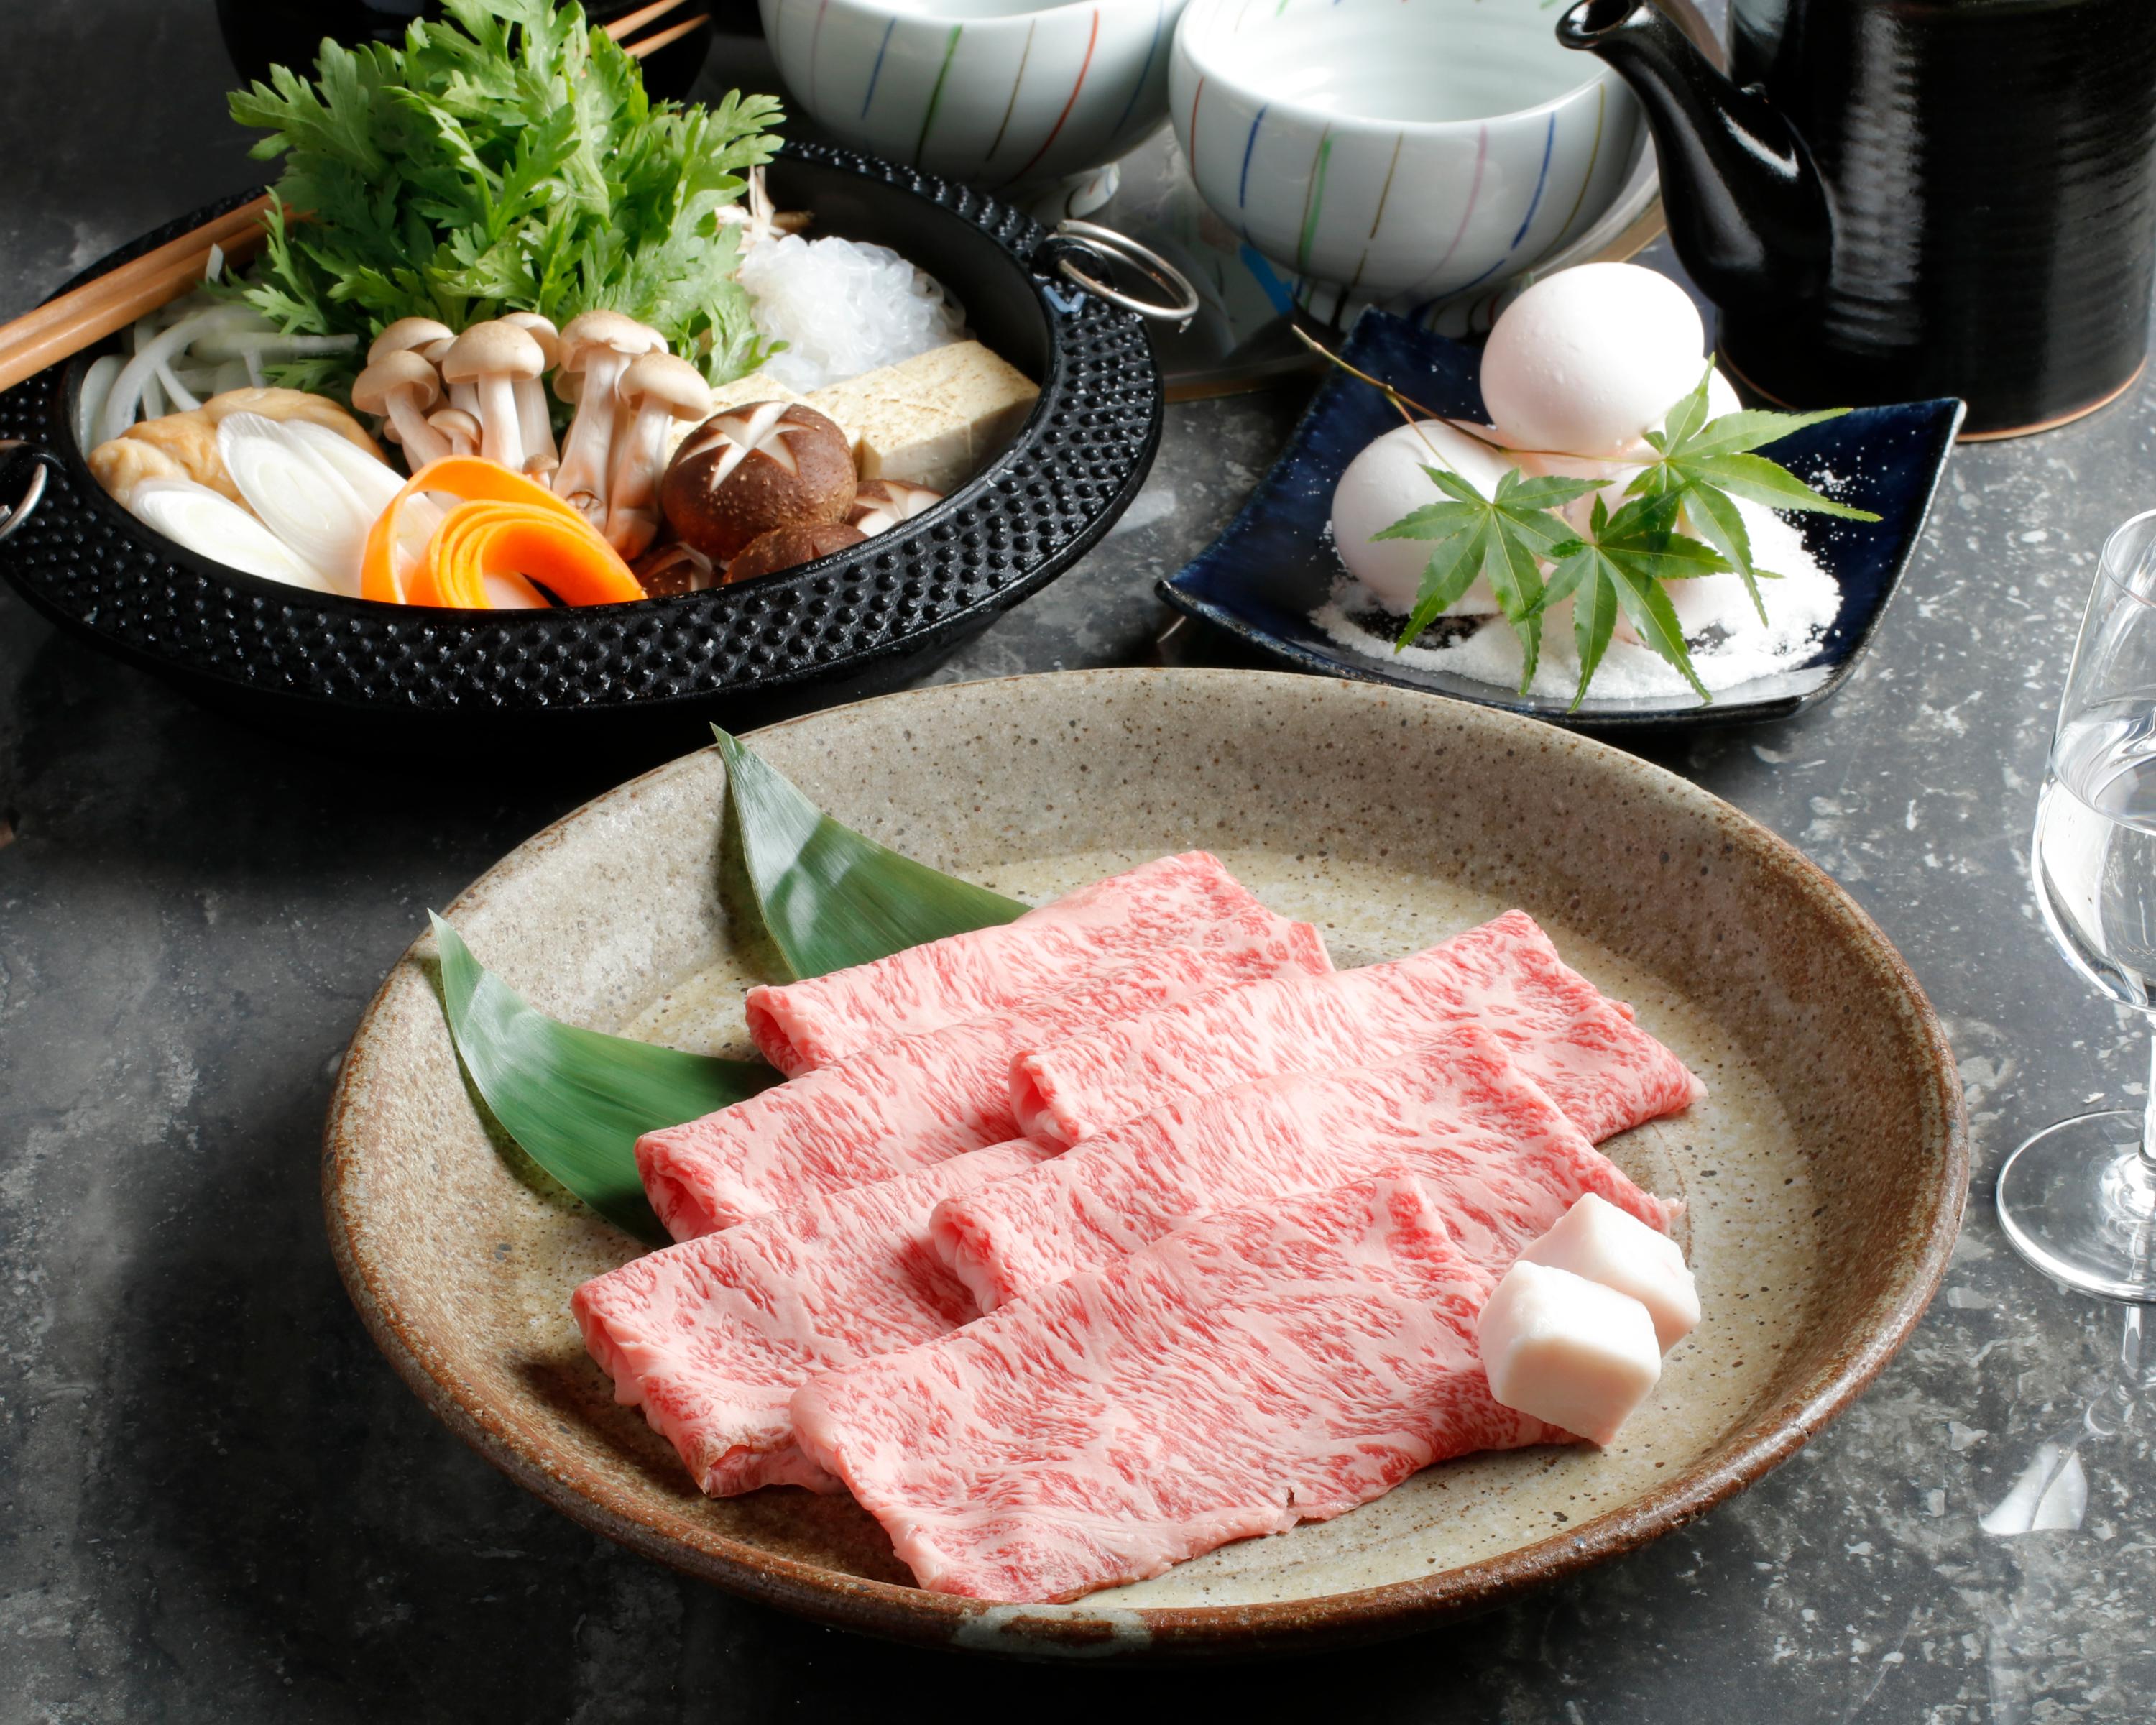 米沢牛 特上ロース ( リブロース ) すき焼き用 / 甘みを感じられる霜降りの最高級牛肉です画像